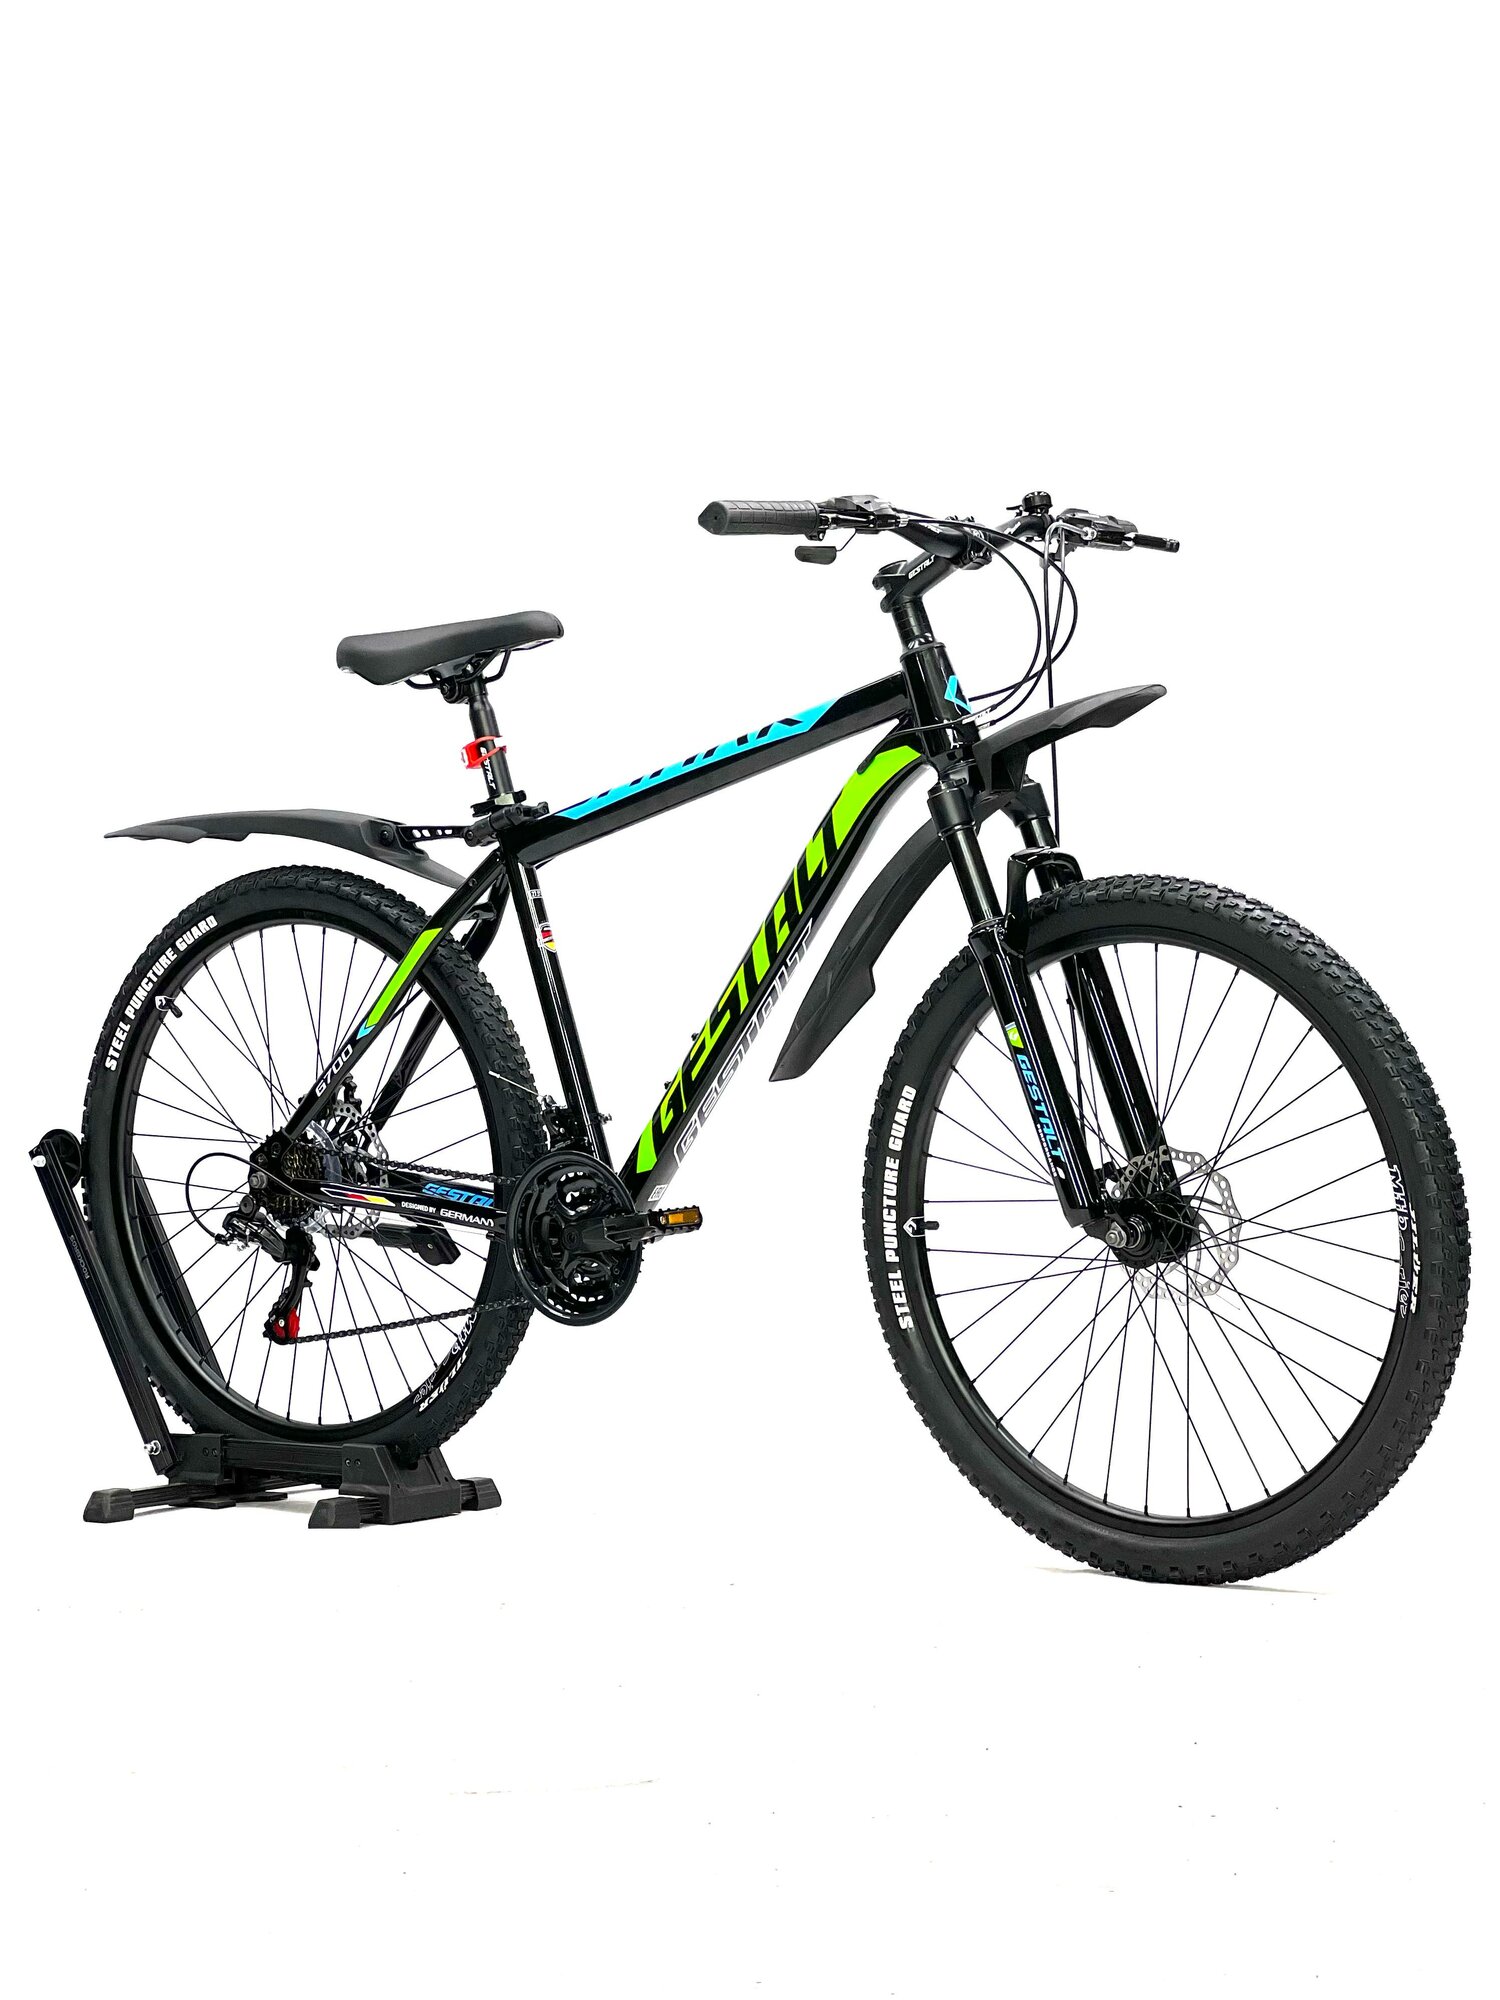 Алюминиевый горный велосипед GESTALT "SHARK" 29', 19', черный/зеленый/синий